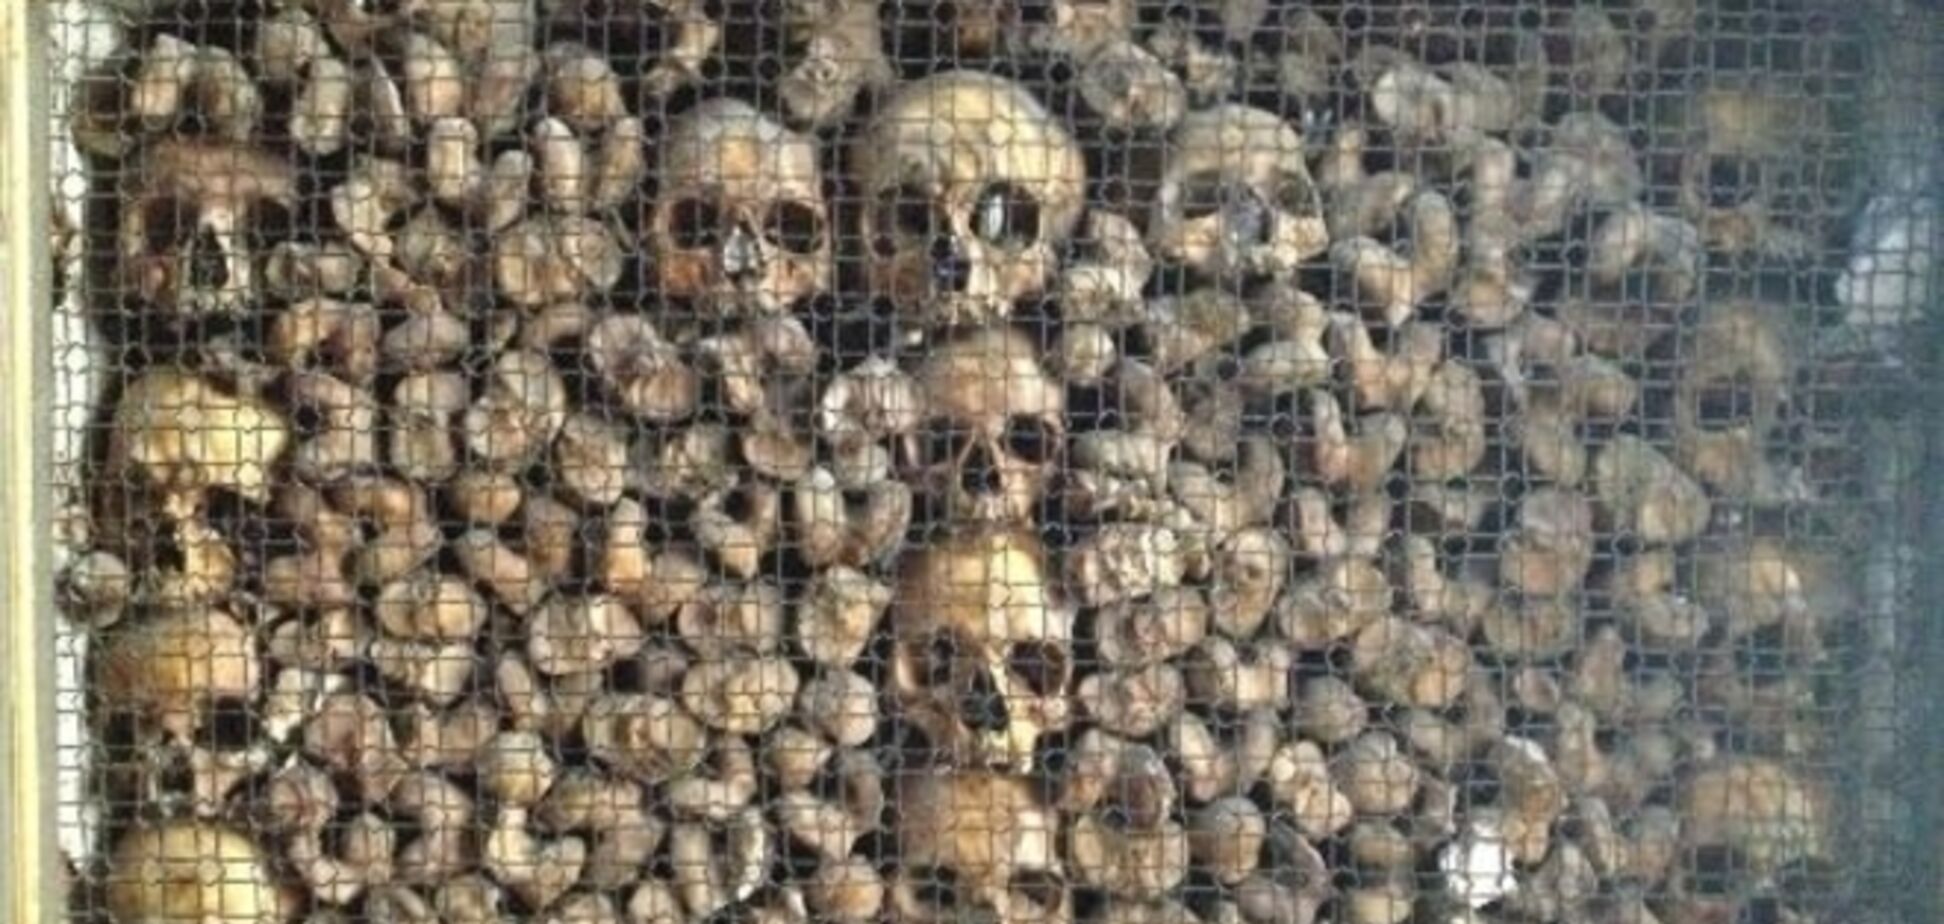 Церкви с сотнями человеческих черепов и костей